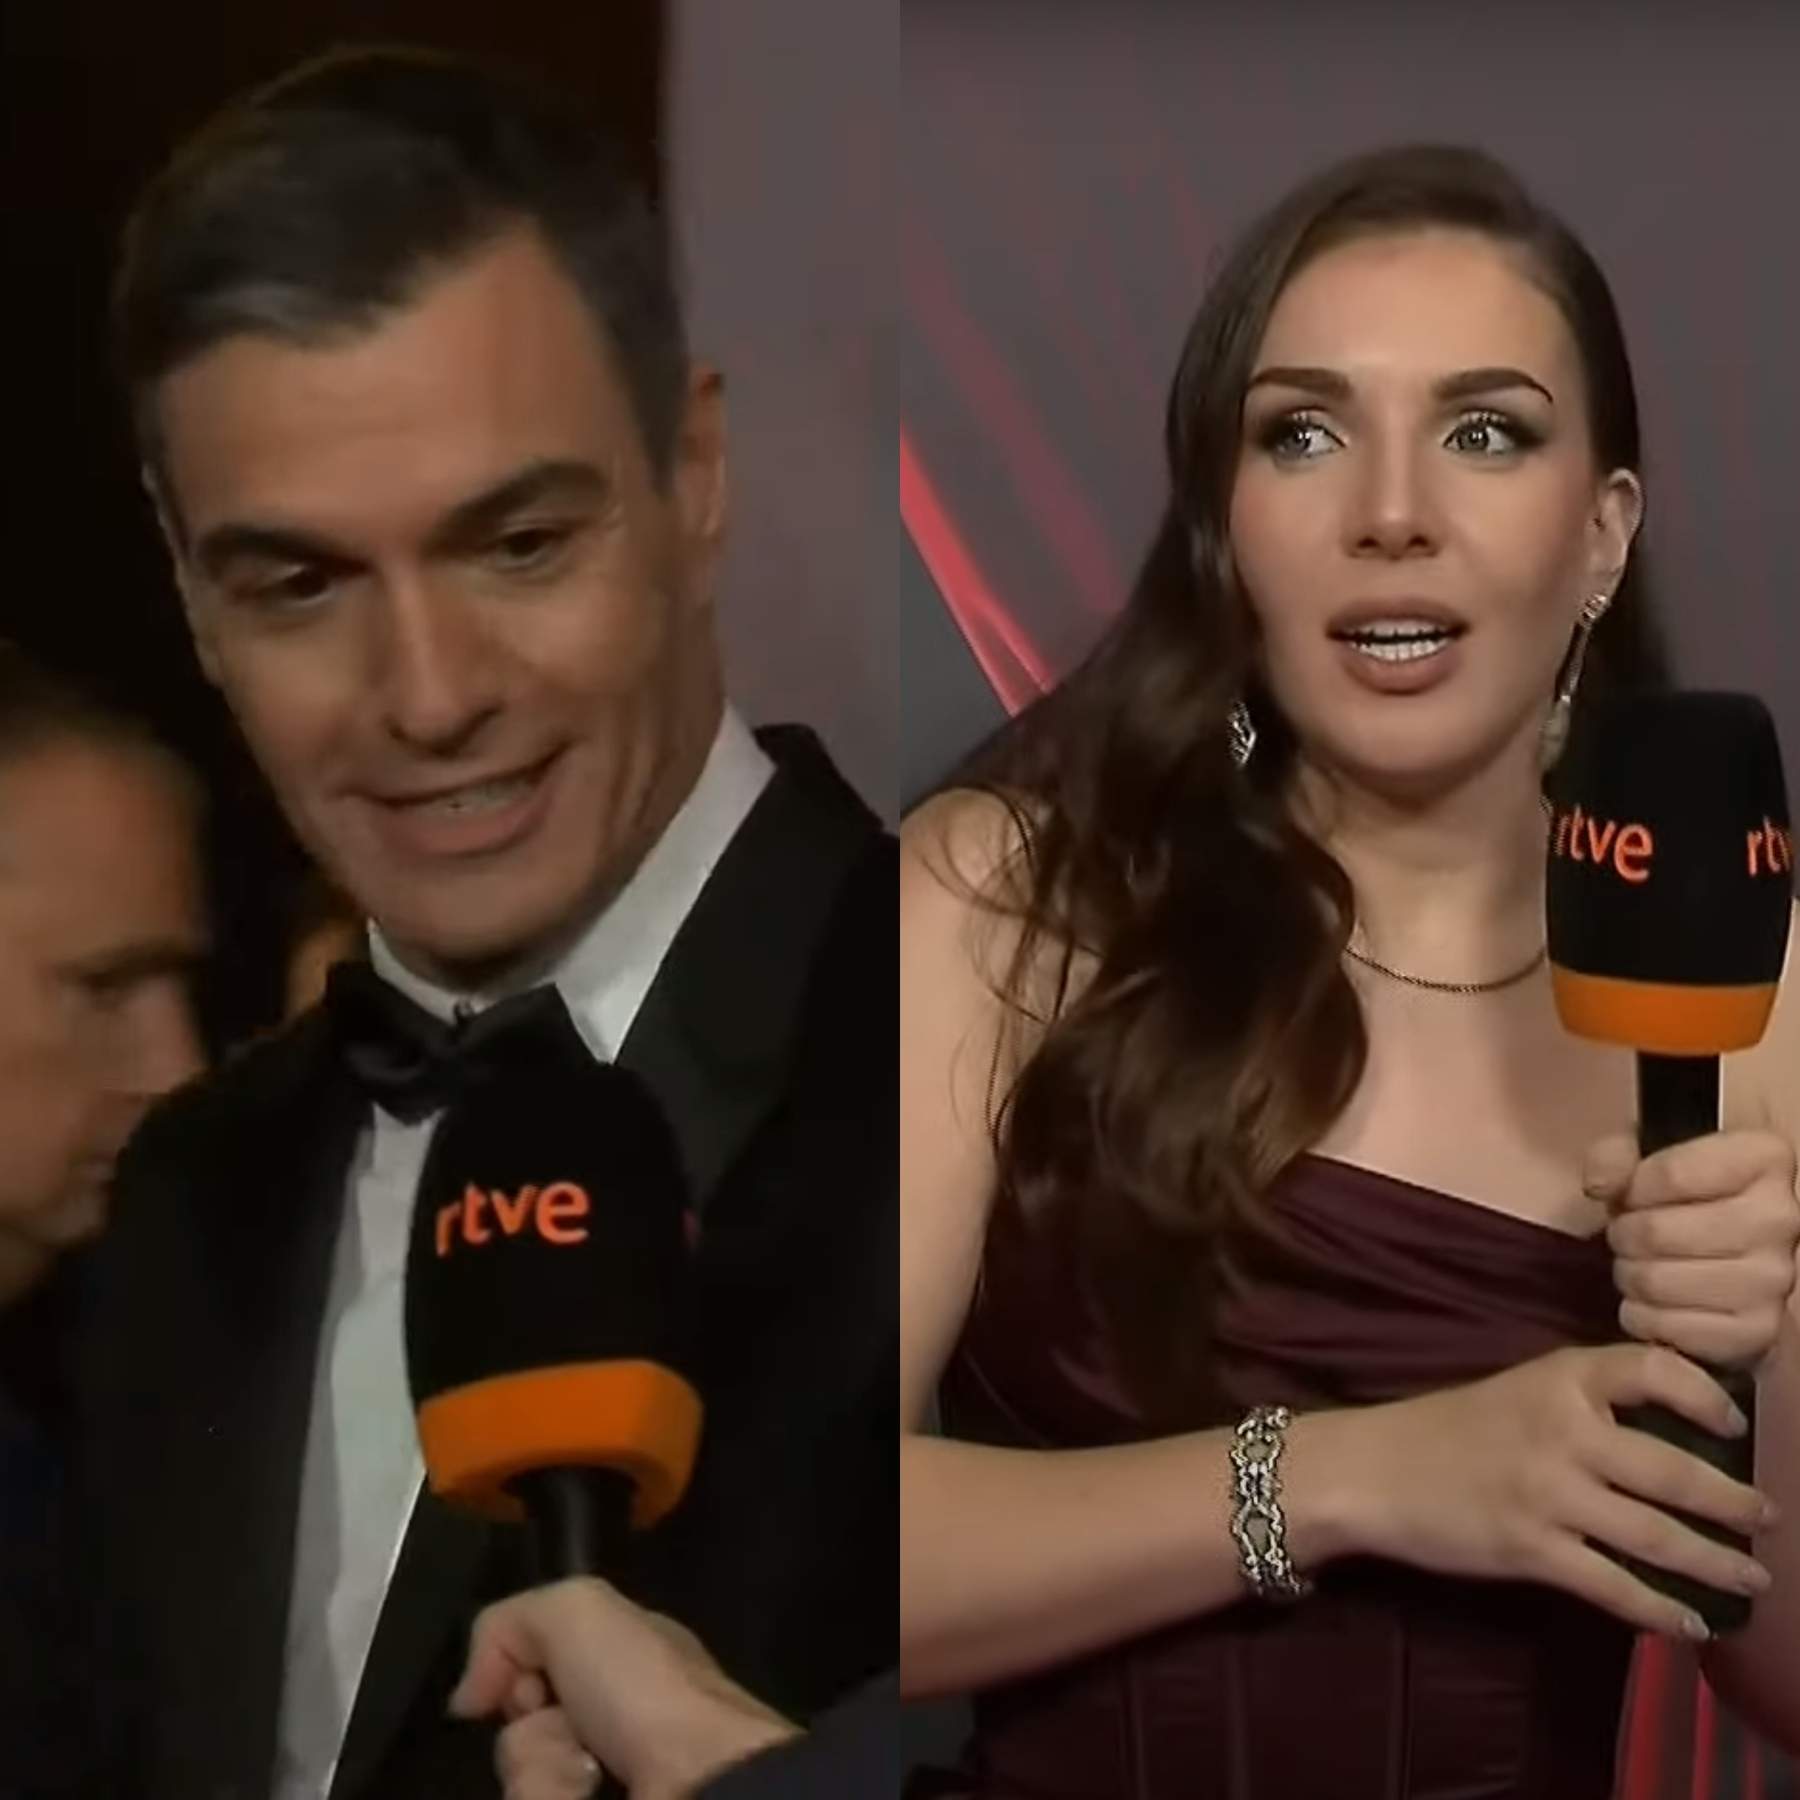 Pedro Sánchez se moja, defiende a Inés Hernand delante de RTVE: "El icono eres tú"